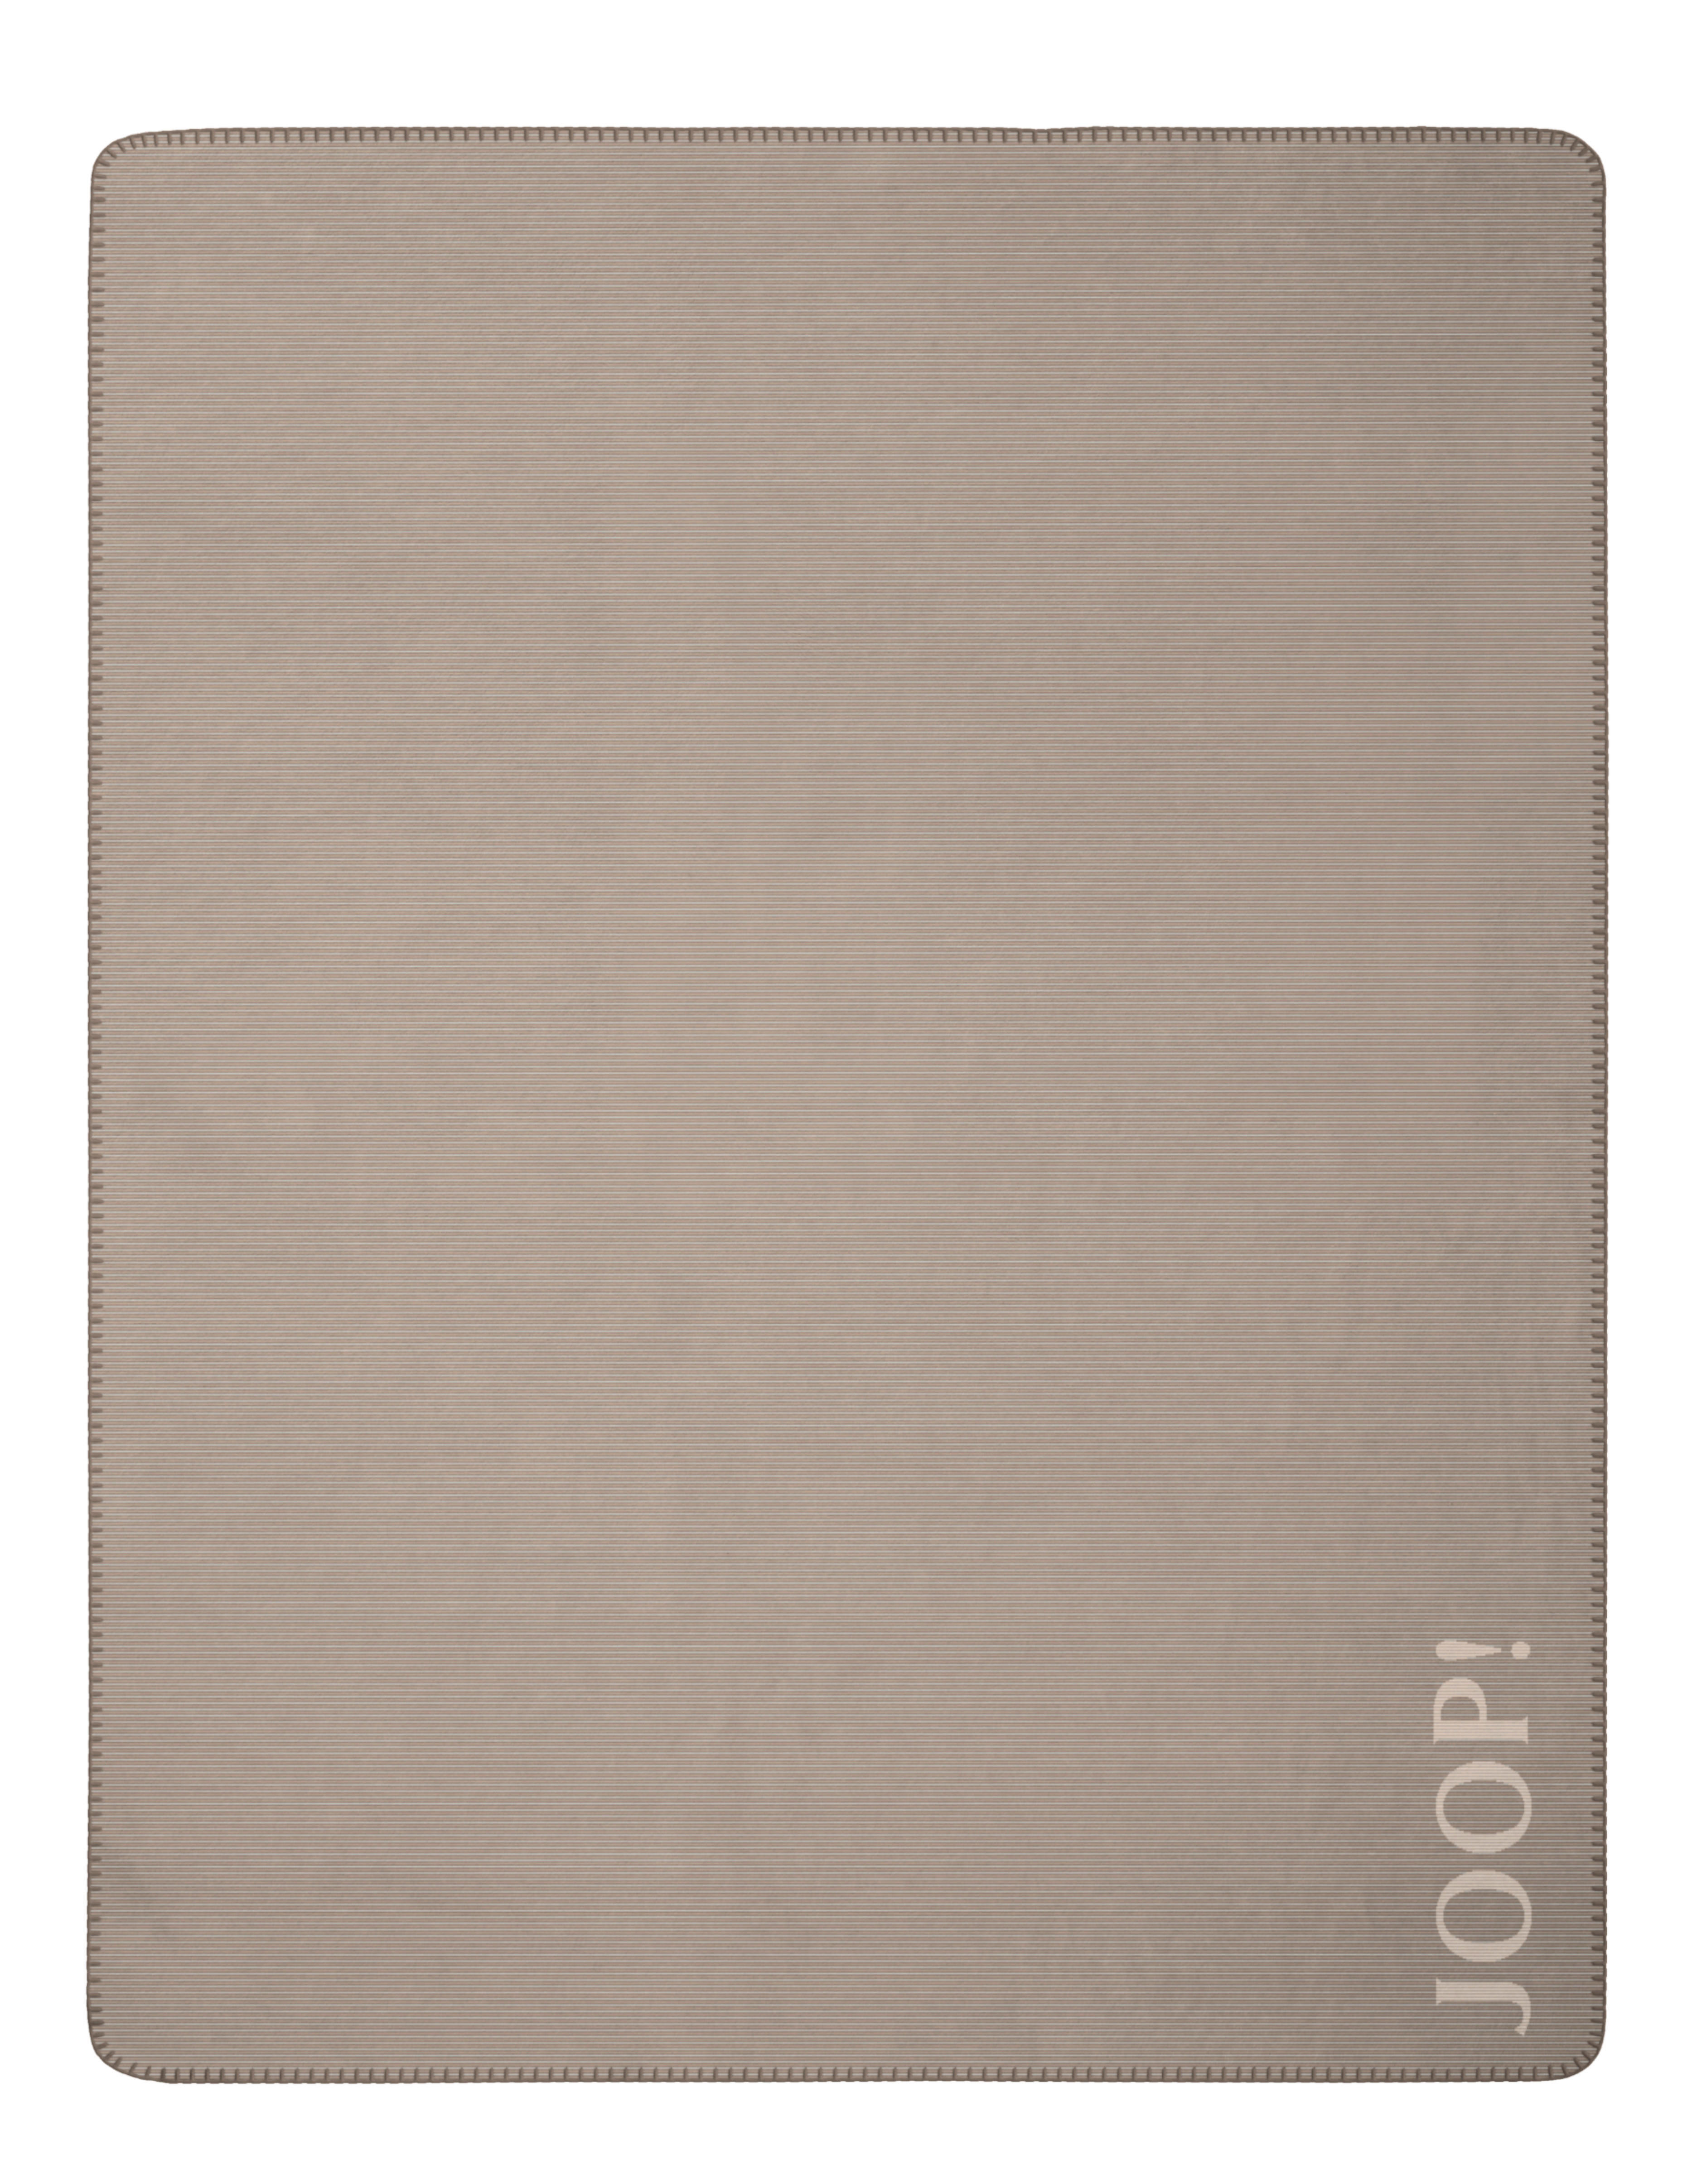 WOHNDECKE Touch 220/240 cm  - Sandfarben/Naturfarben, Design, Textil (220/240cm) - Joop!